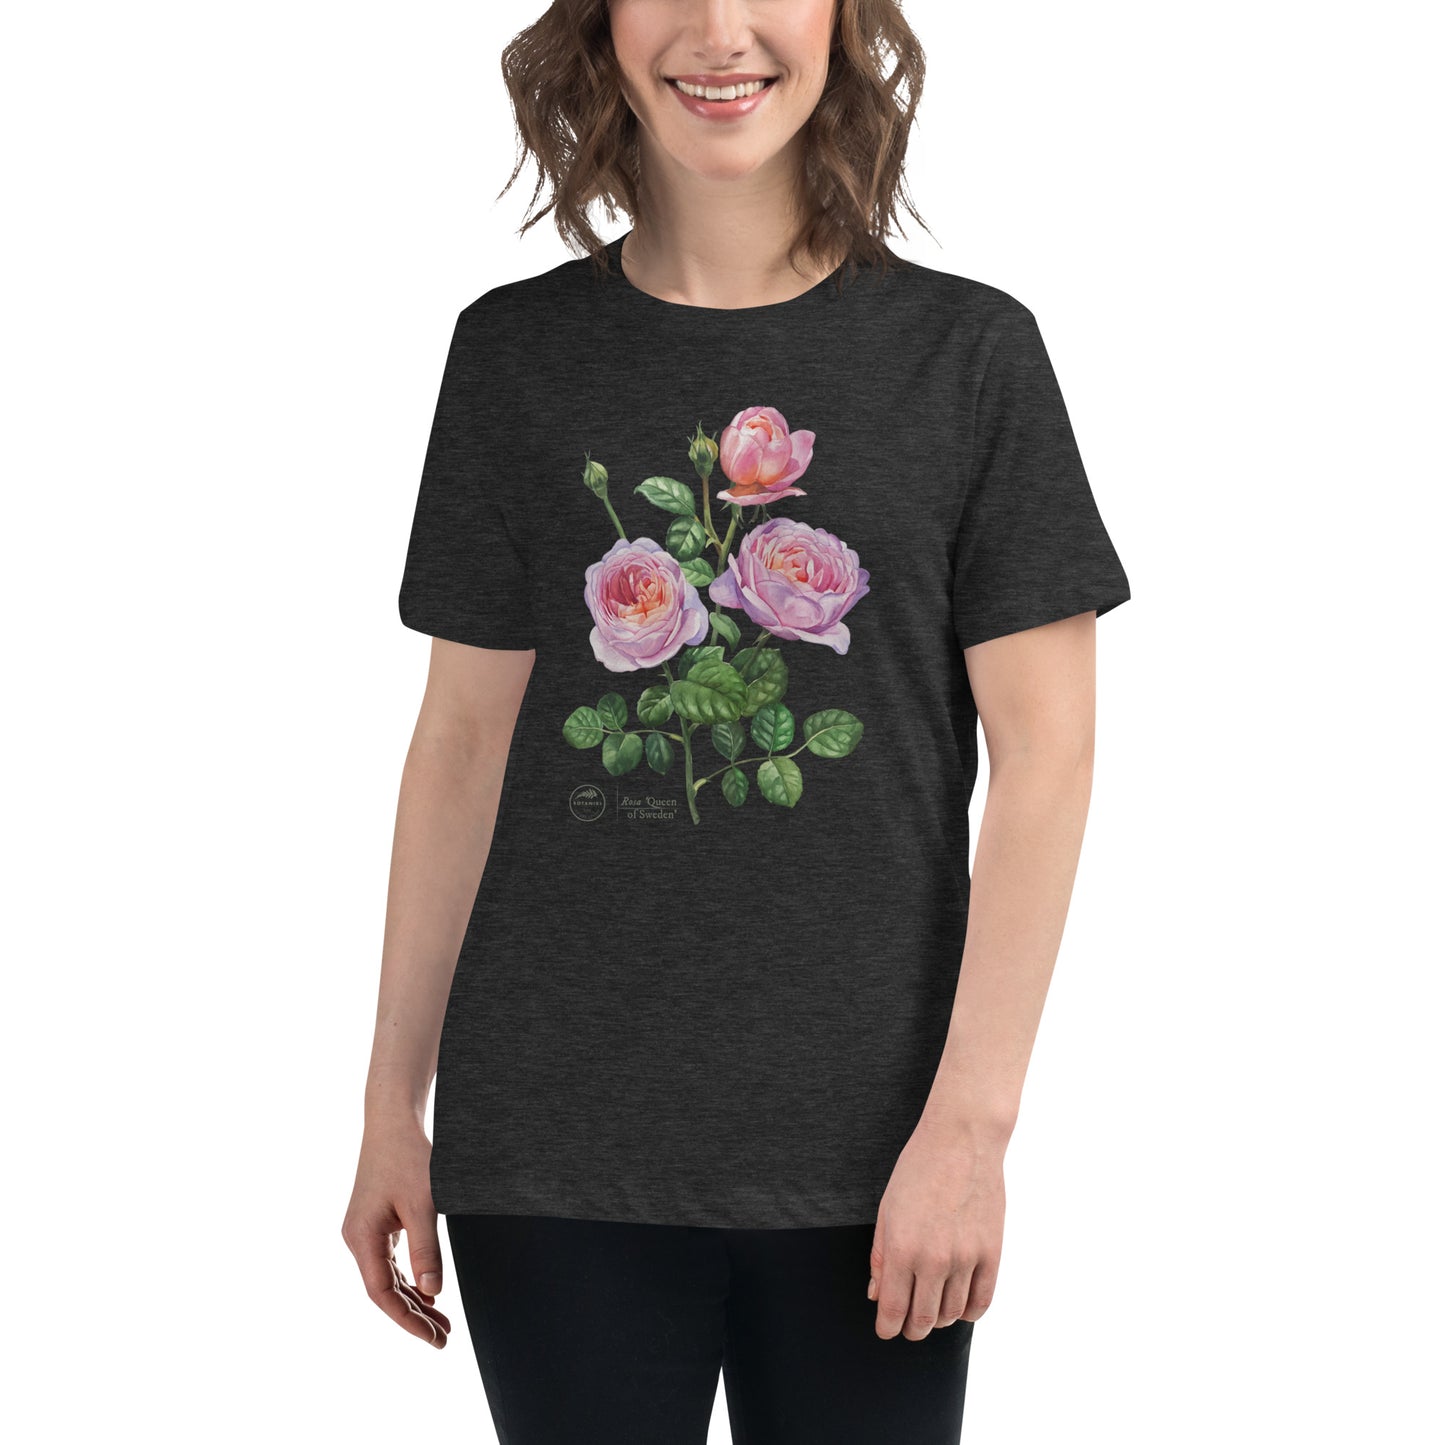 Women's Relaxed T-Shirt - Rose 'Queen of Sweden'